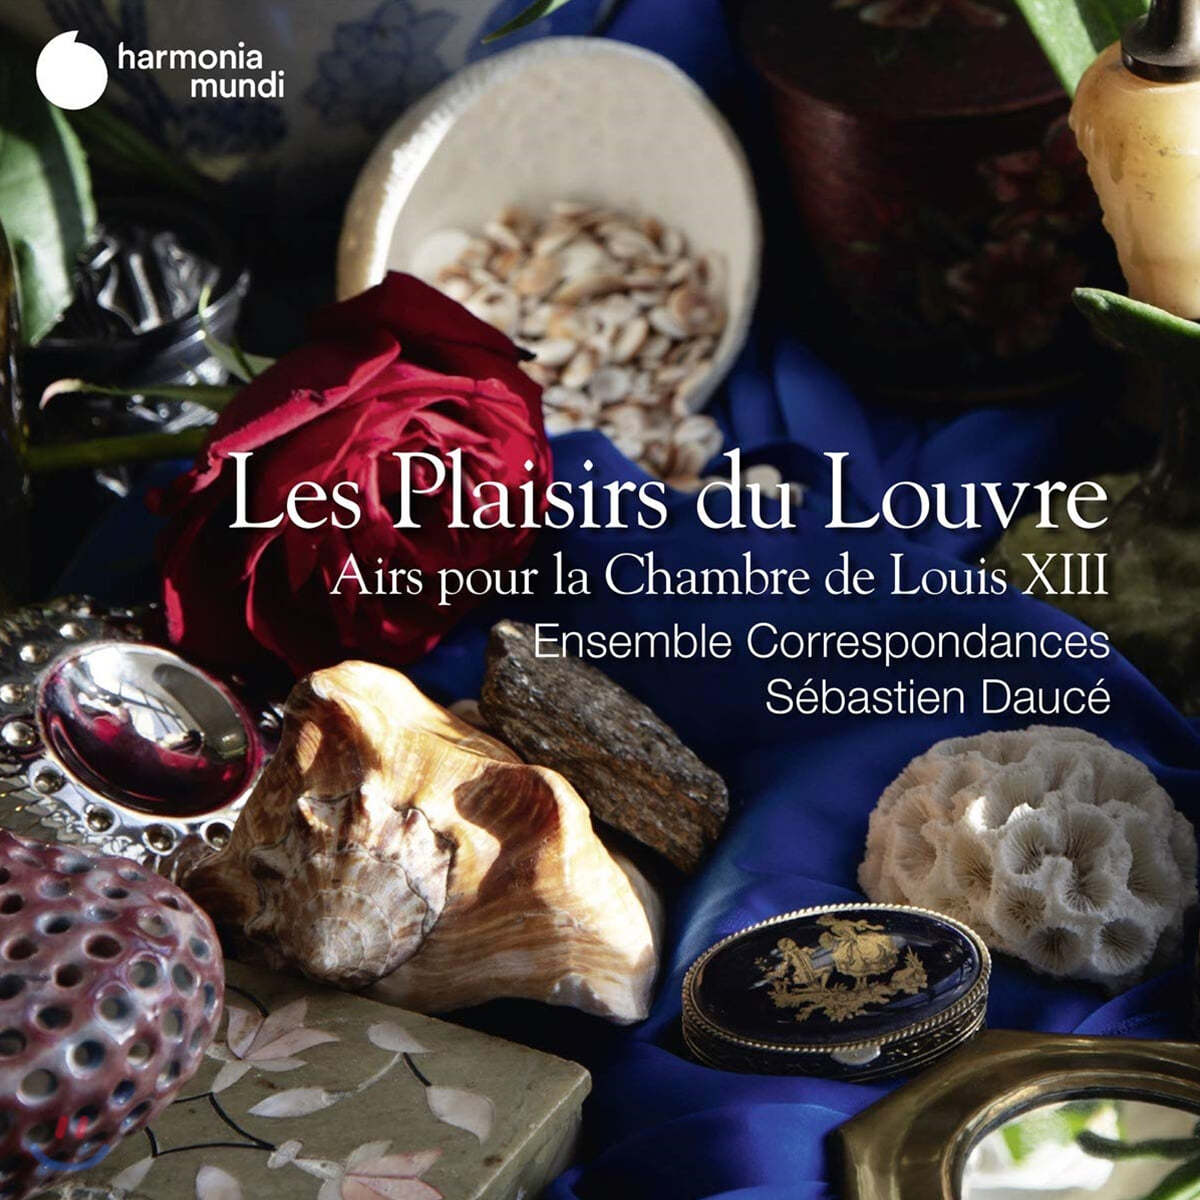 Ensemble Correspondances 루브르 왕궁의 음악 (Les Plaisirs du Louvre)